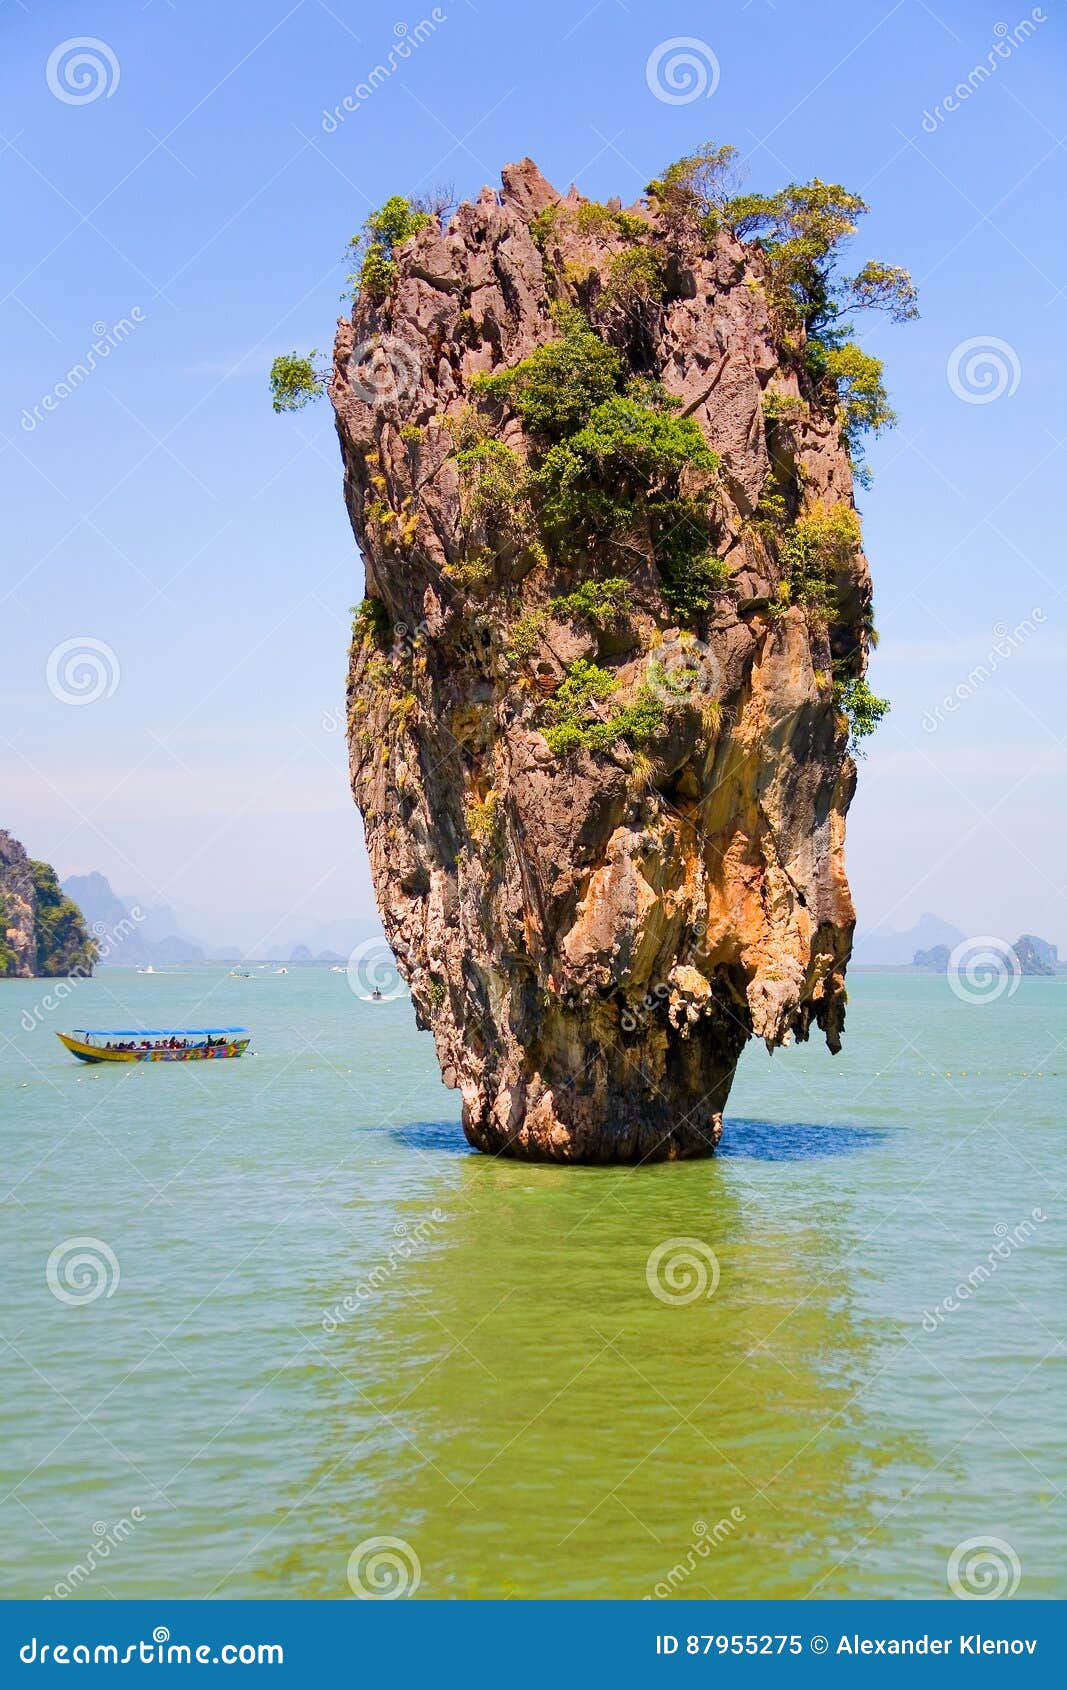 Thailand. Scenic James Bond Island Near Phuket Editorial Image - Image ...